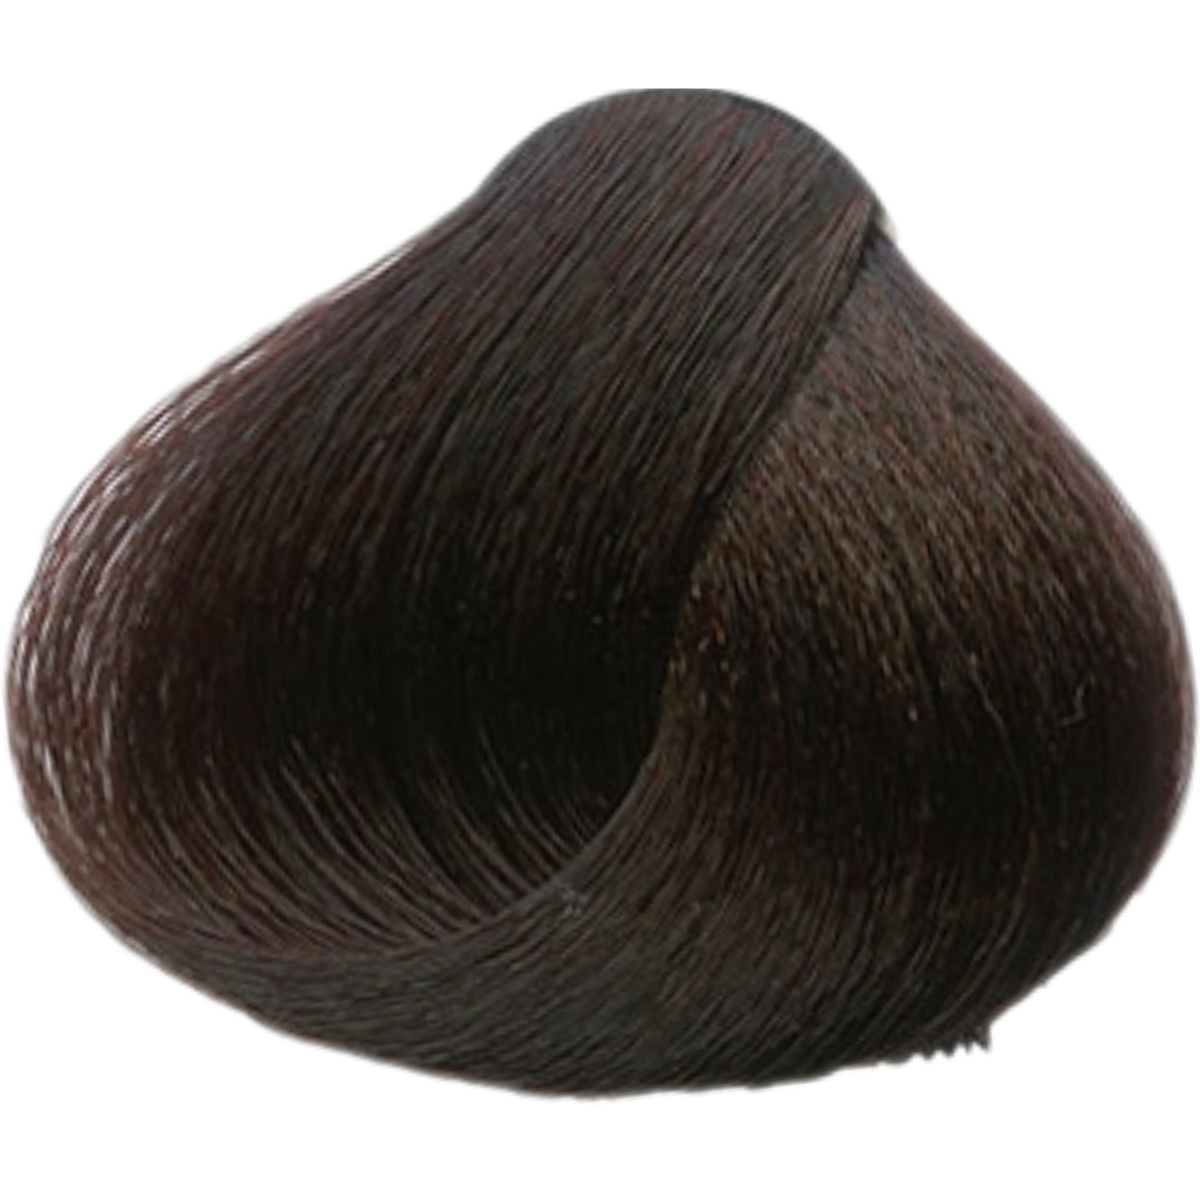 צבע שיער 4.5 MAHOGANY BROWN פארמויטה FarmaVita צבע לשיער 60 גרם